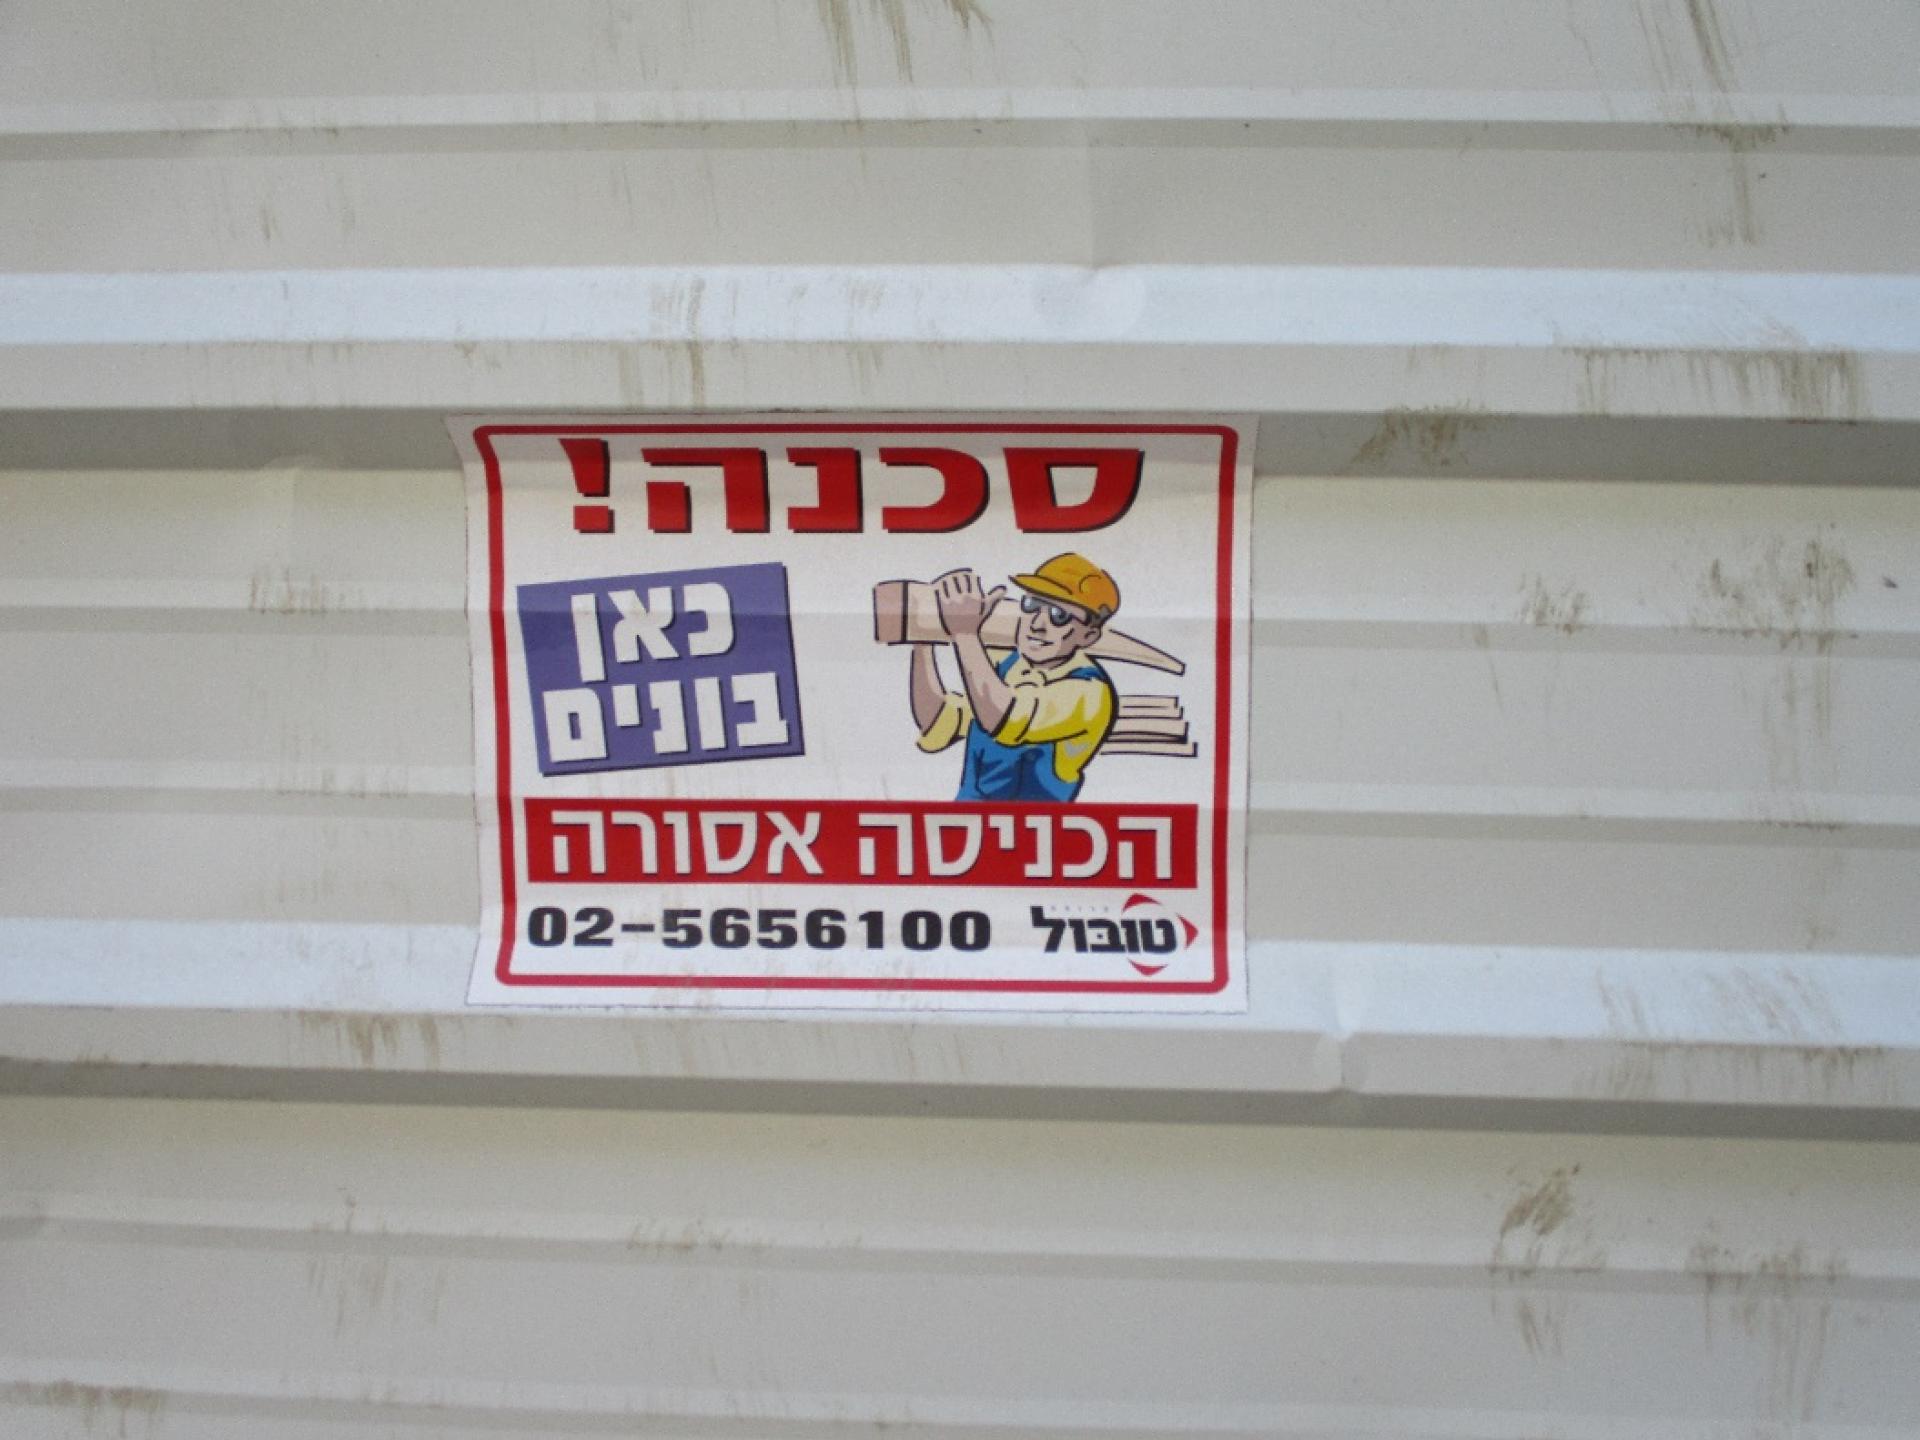 שלט אזהרה בעברית בלבד ביציאה ממחסום קלנדיה